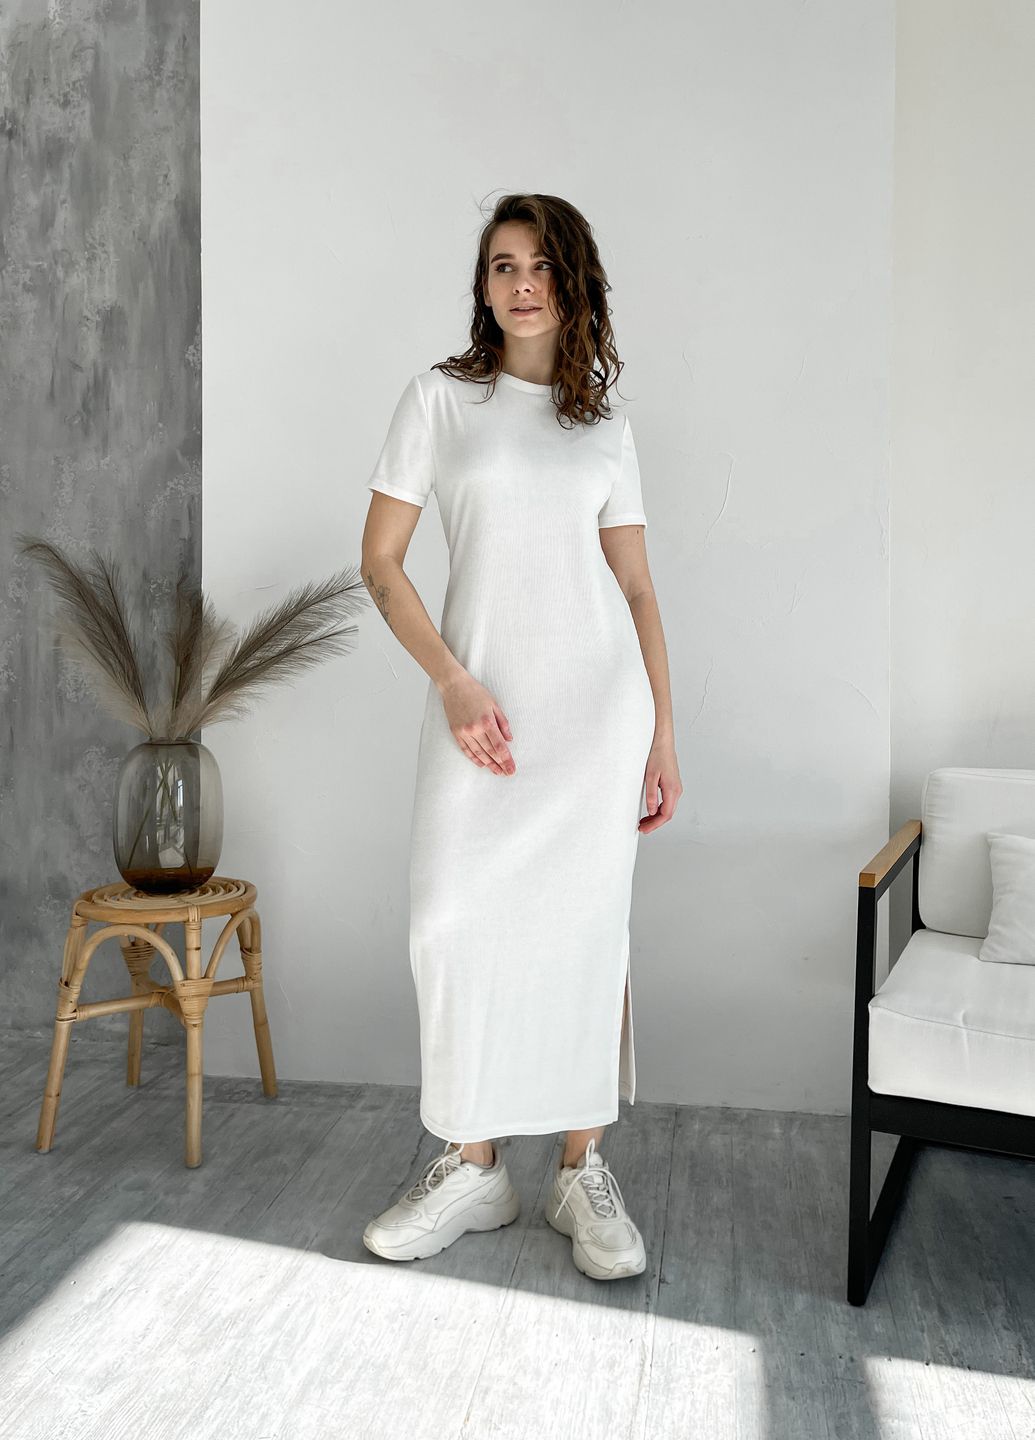 Купить Длинное платье-футболка в рубчик белое Merlini Кассо 700000126 размер 42-44 (S-M) в интернет-магазине